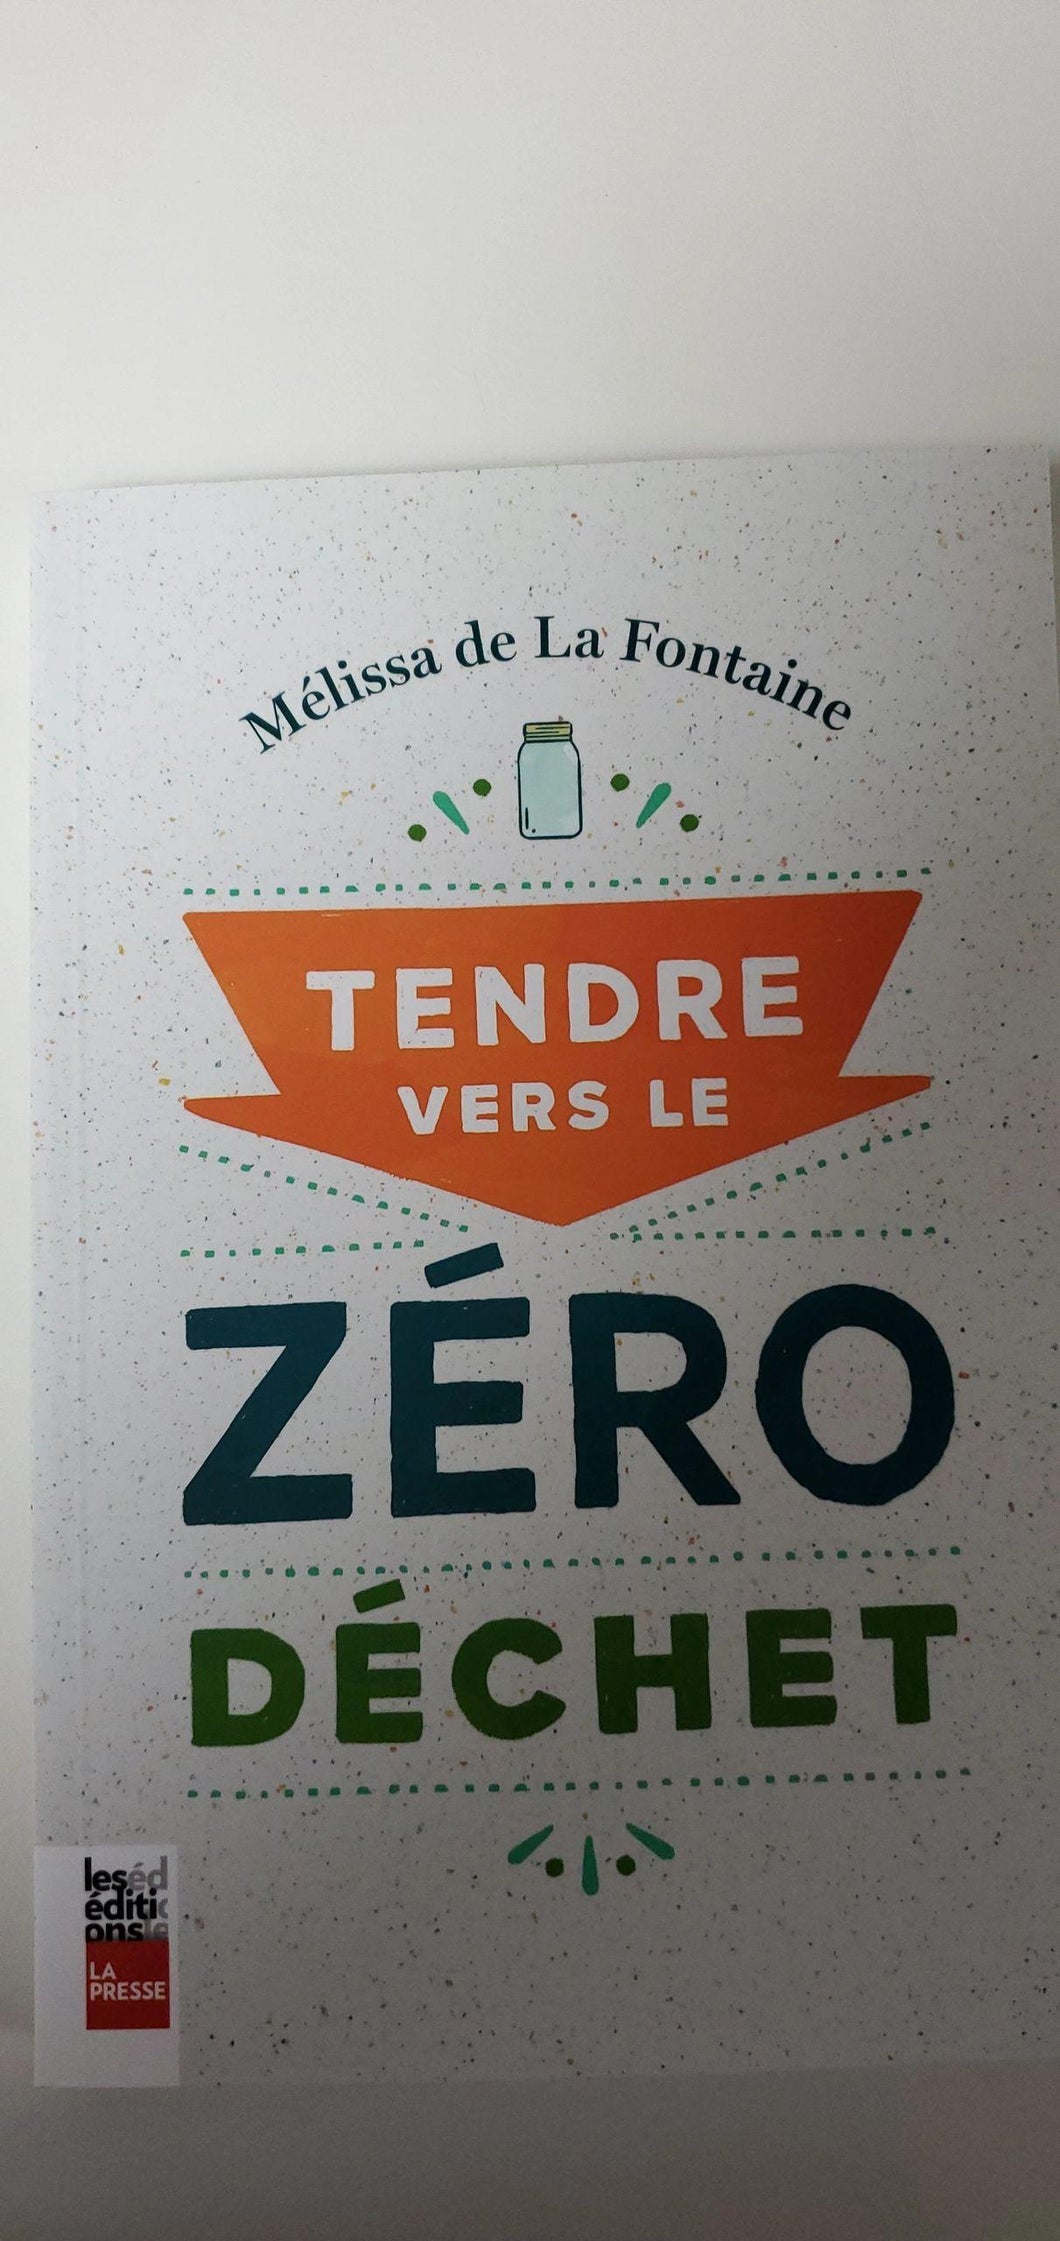 Livre Zéro déchet, auteur Mélissa de La Fontaine